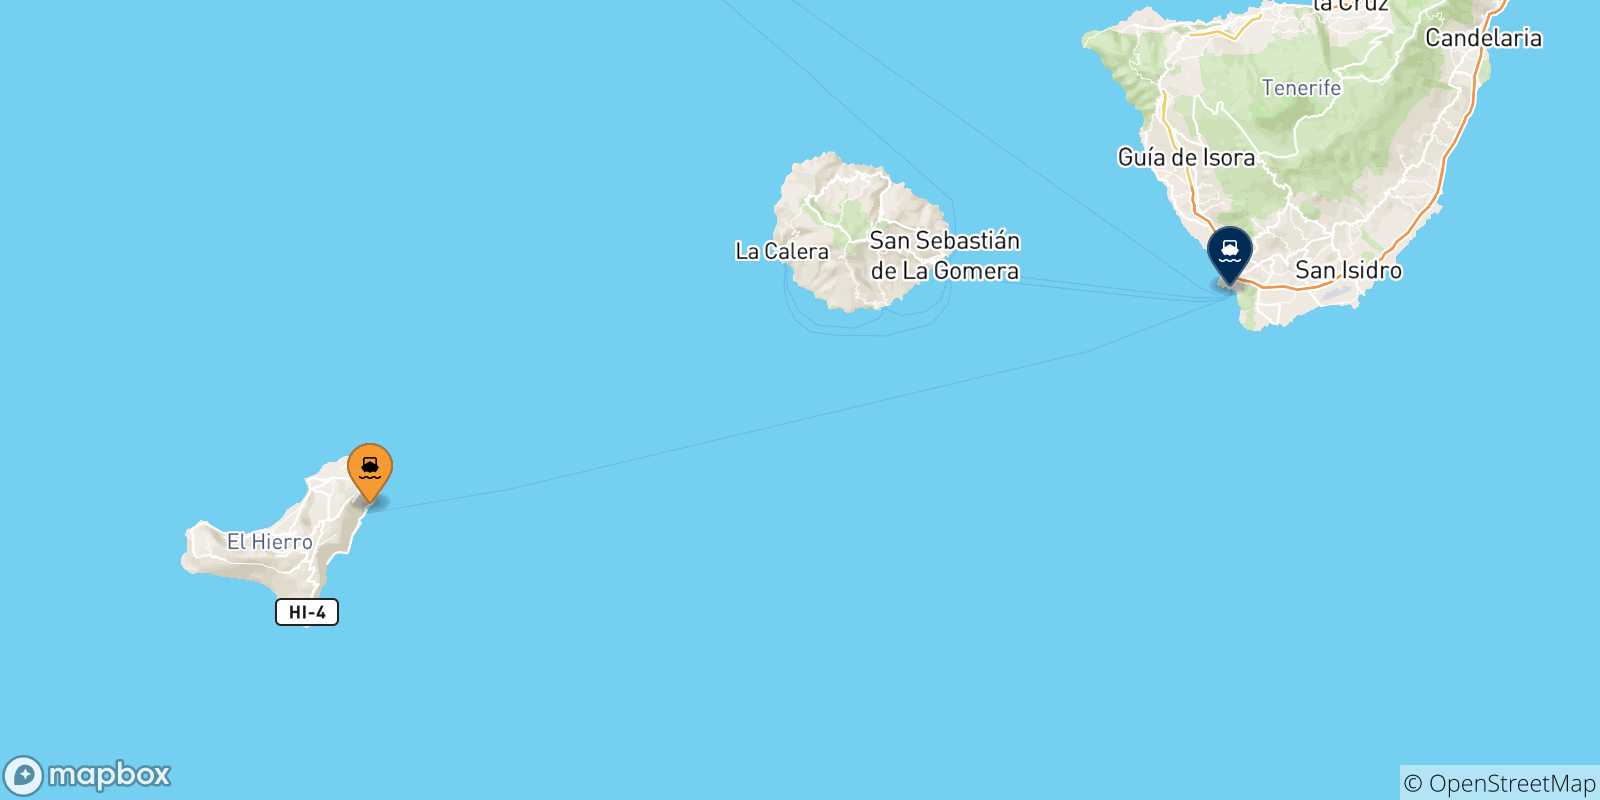 Mappa delle possibili rotte tra Valverde (El Hierro) e le Isole Canarie